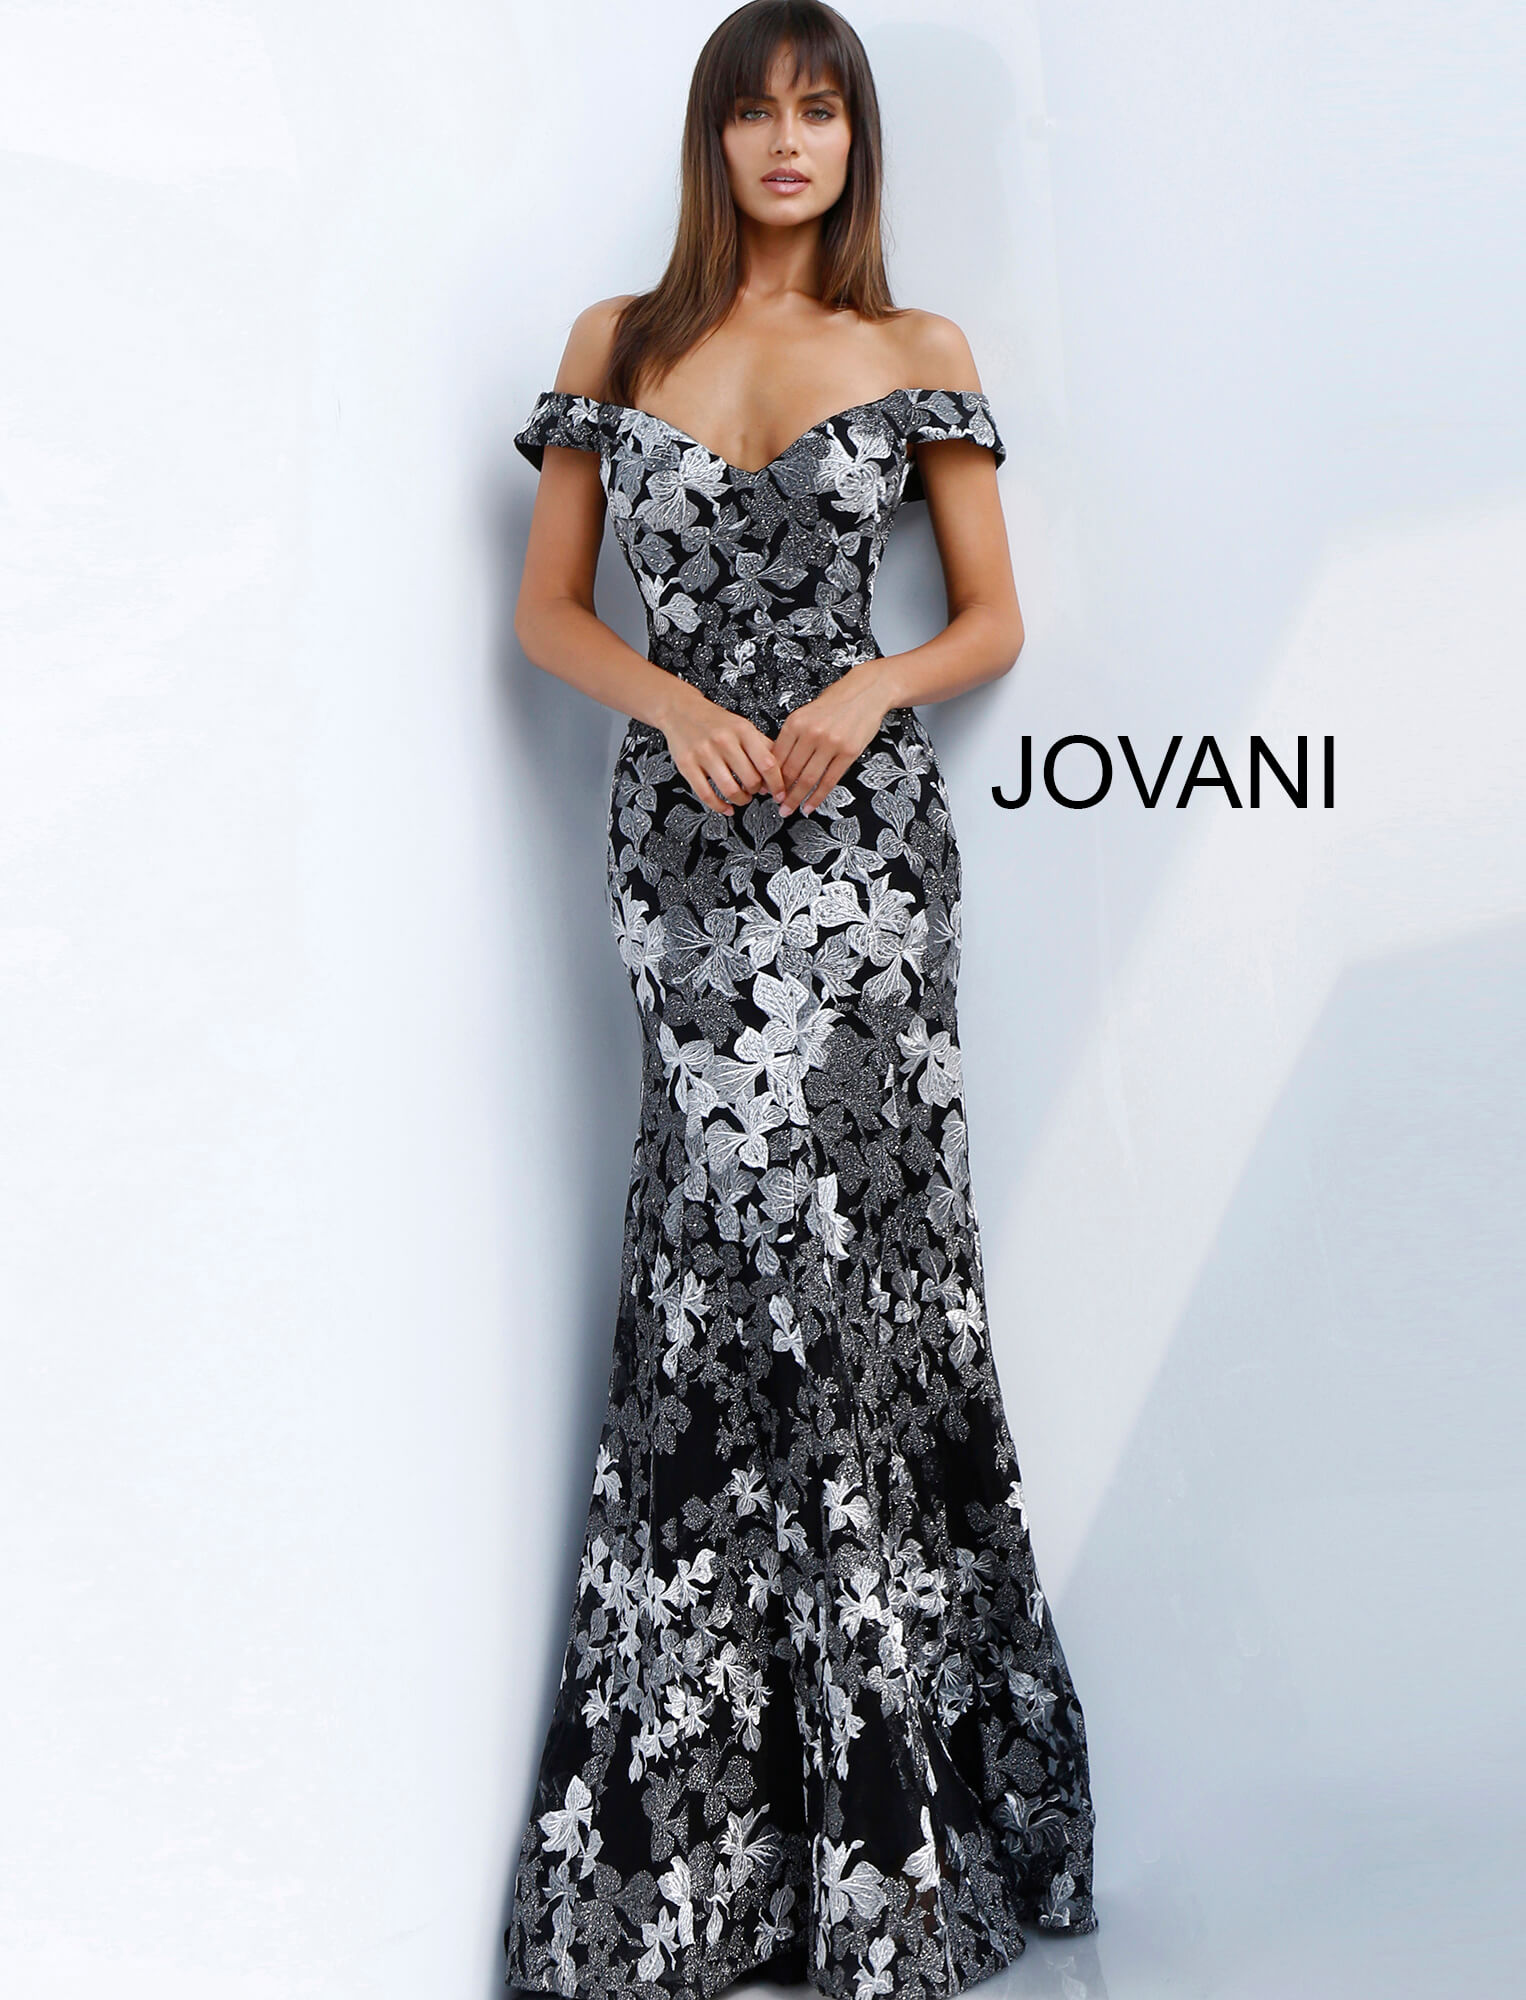 Jovani 61380 Black Grey Floral Embroidered Off the Shoulder Evening Dress